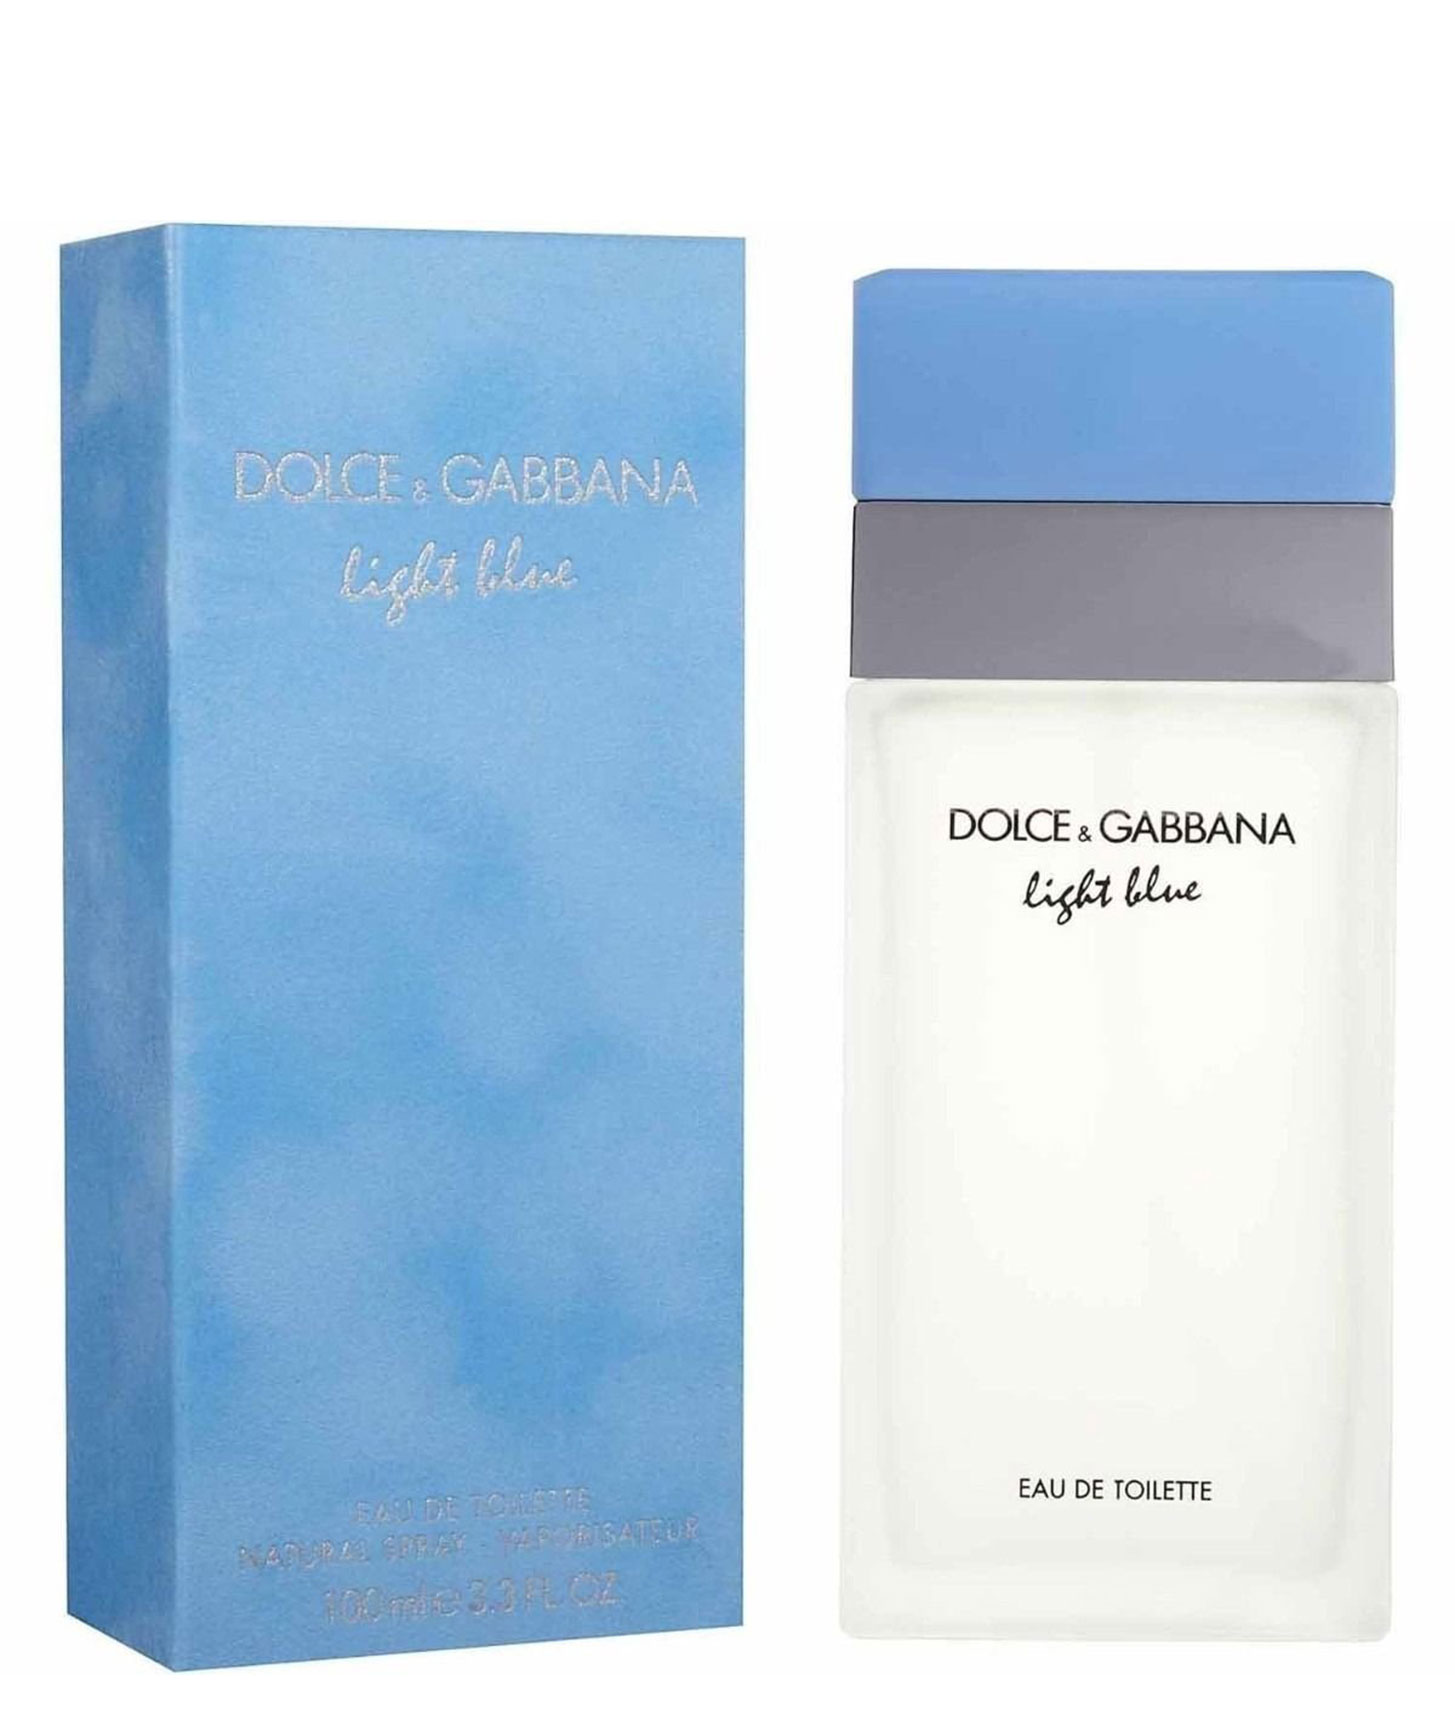 Dolce gabbana light blue 100. Dolce Gabbana Light Blue 100мл. Dolce Gabbana Light Blue 100ml. Dolce Gabbana Light Blue женские 100ml. D&G Light Blue EDT for women 100 ml.